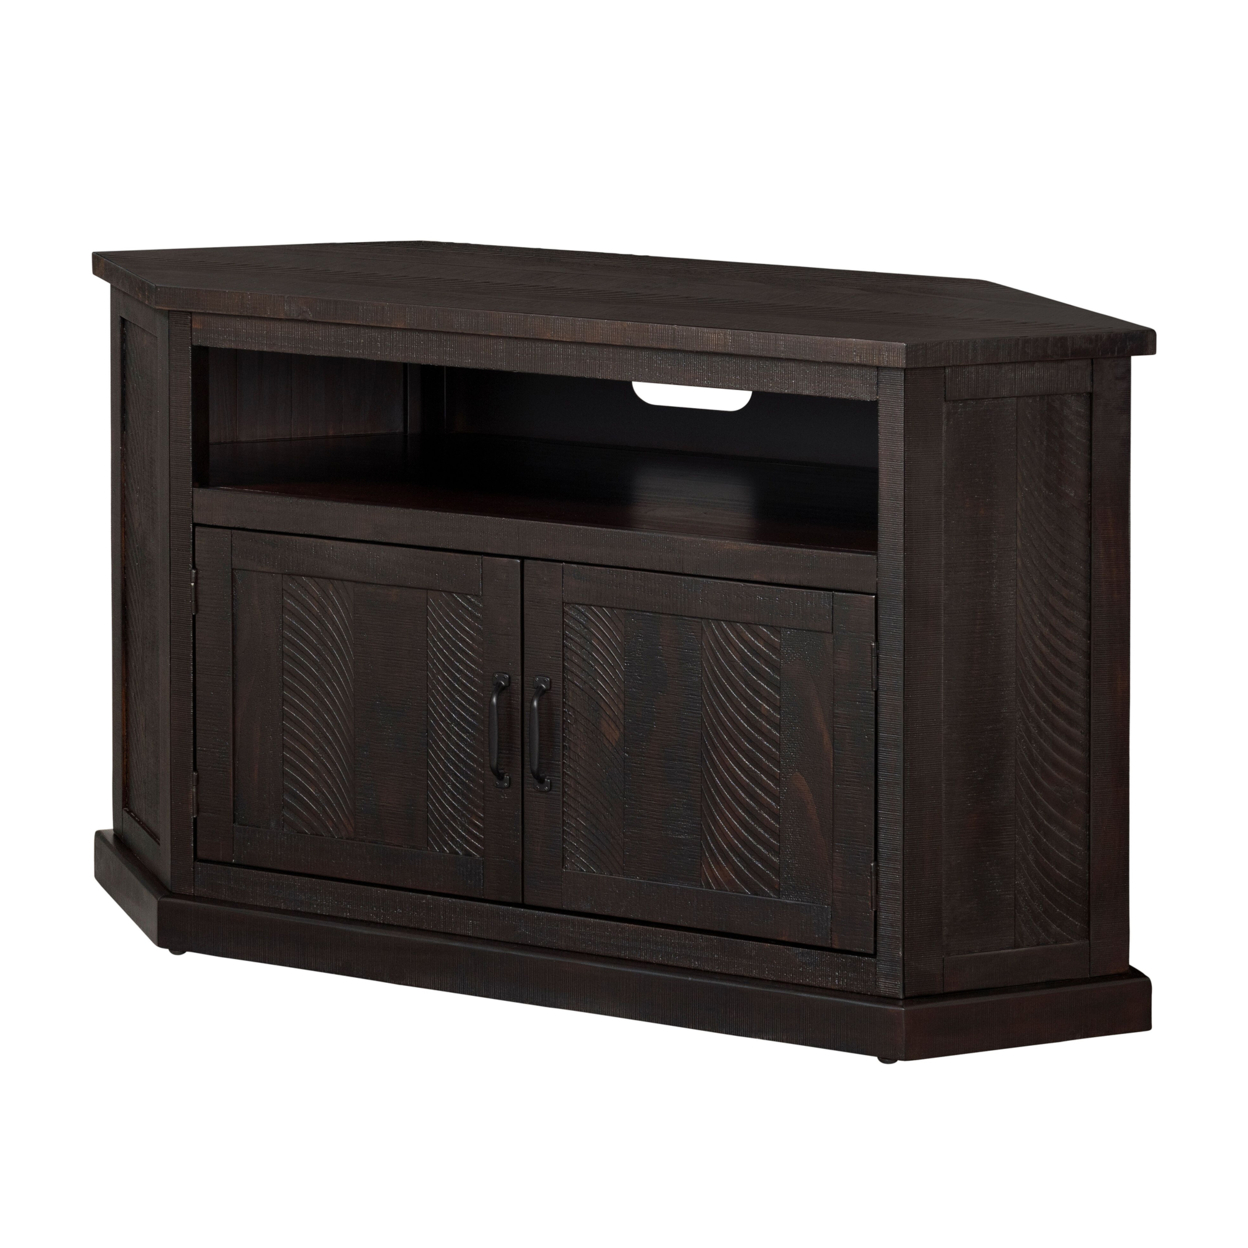 Rustic Wooden Corner TV Stand With 2 Door Cabinet, Espresso Brown- Saltoro Sherpi